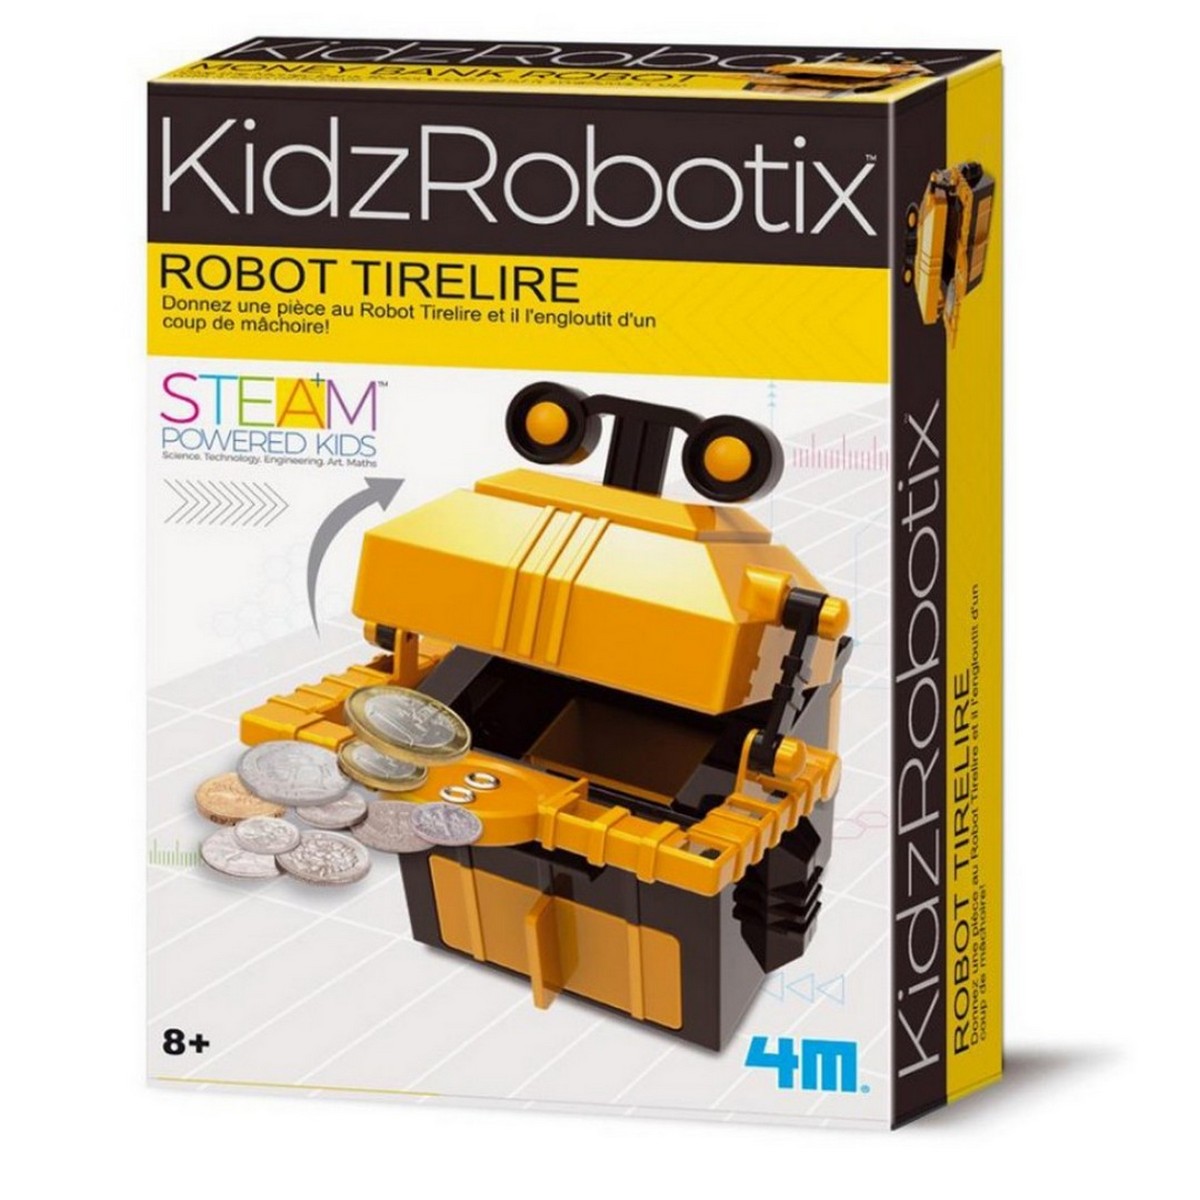 4M kidsrobotix robot tirelire une idee cadeau chez ugo et lea  (9)